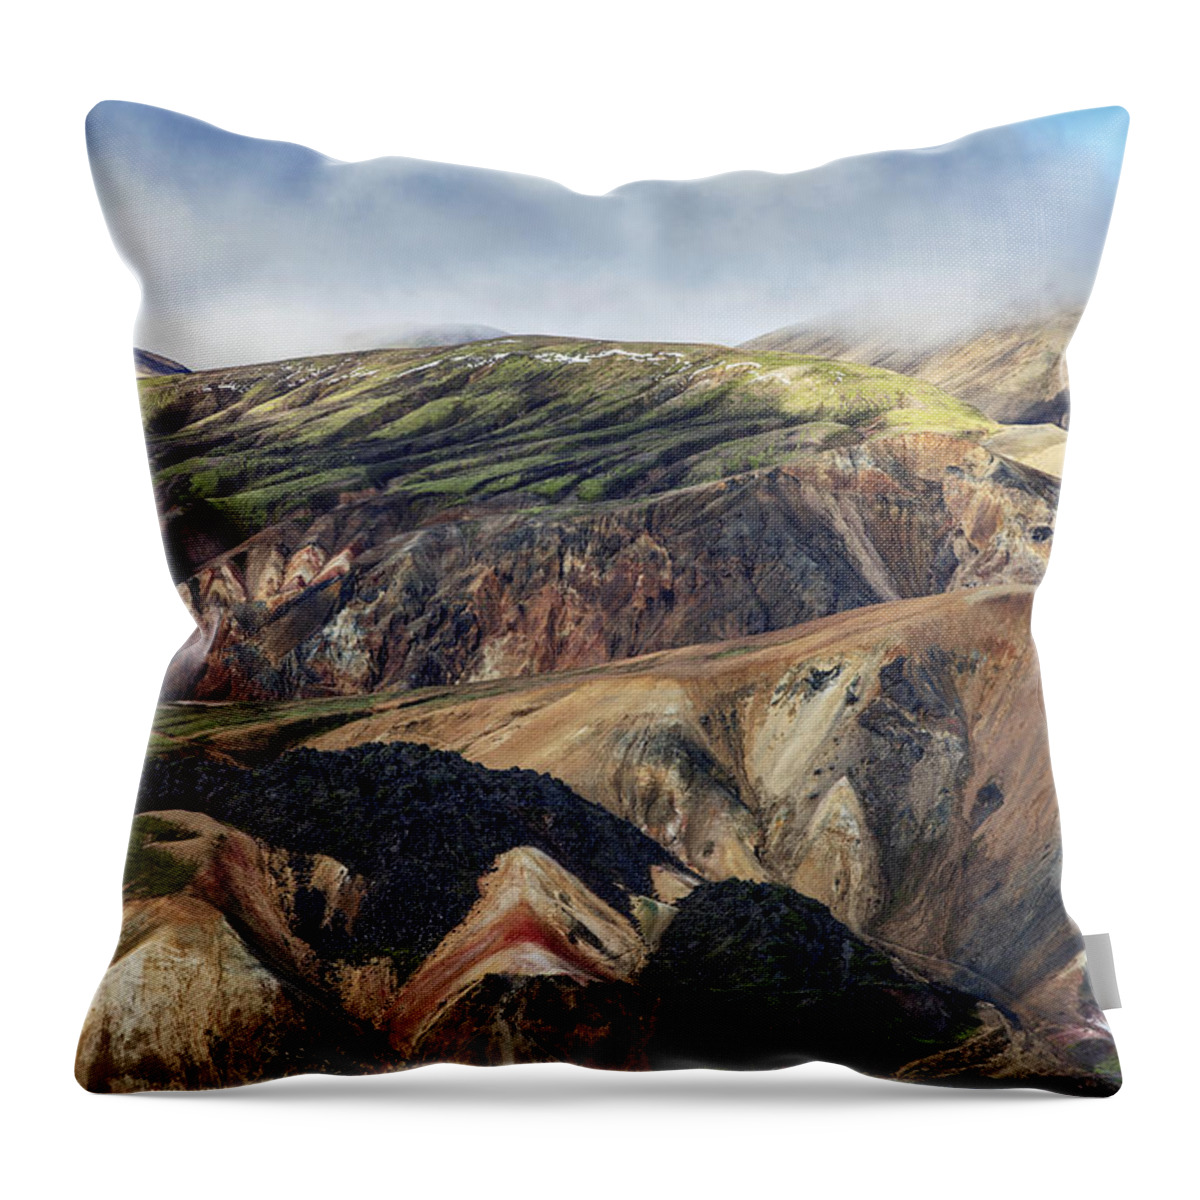 Heike Odermatt Throw Pillow featuring the photograph Rhyolite Mountains Landmannalaugar by Heike Odermatt